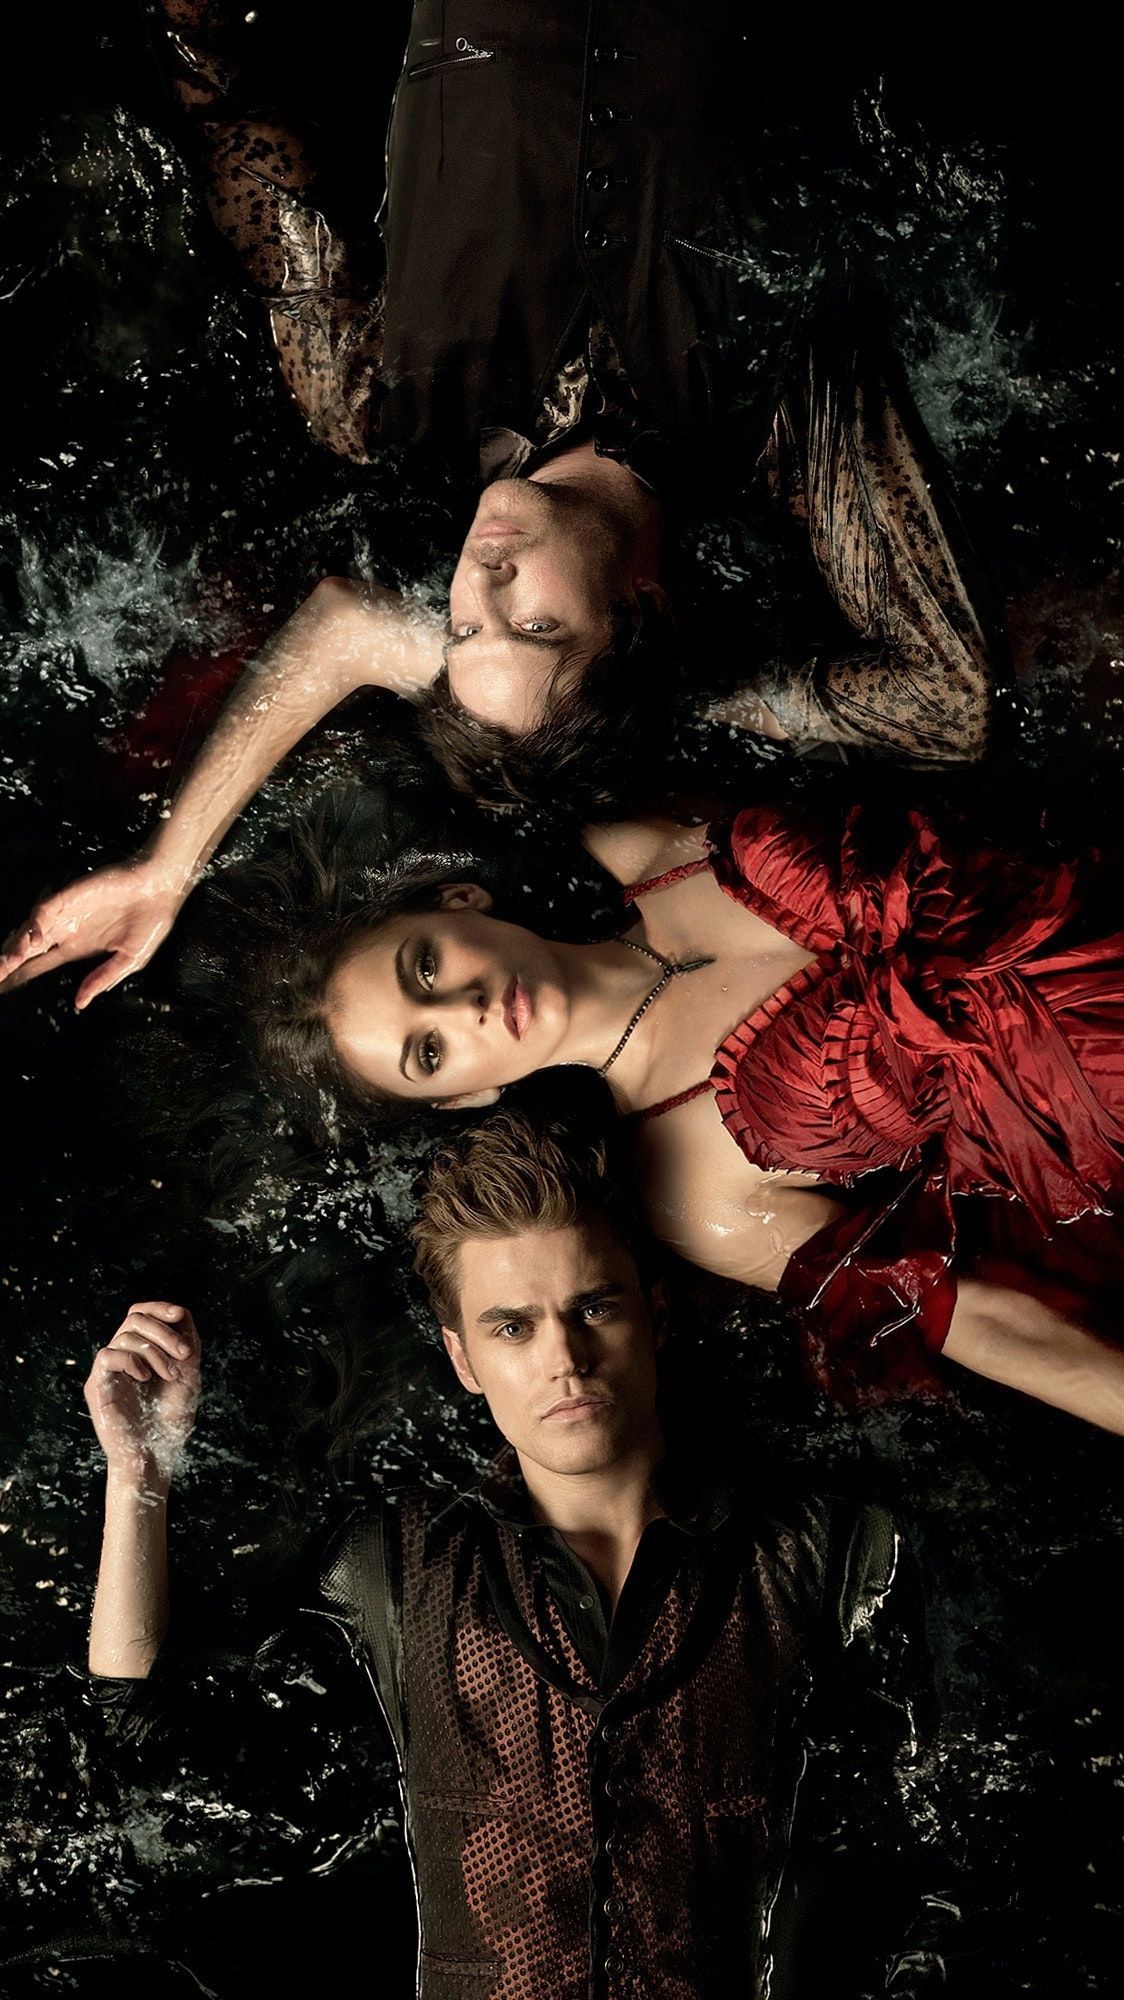 Vampire Diaries Wallpaper  NawPic